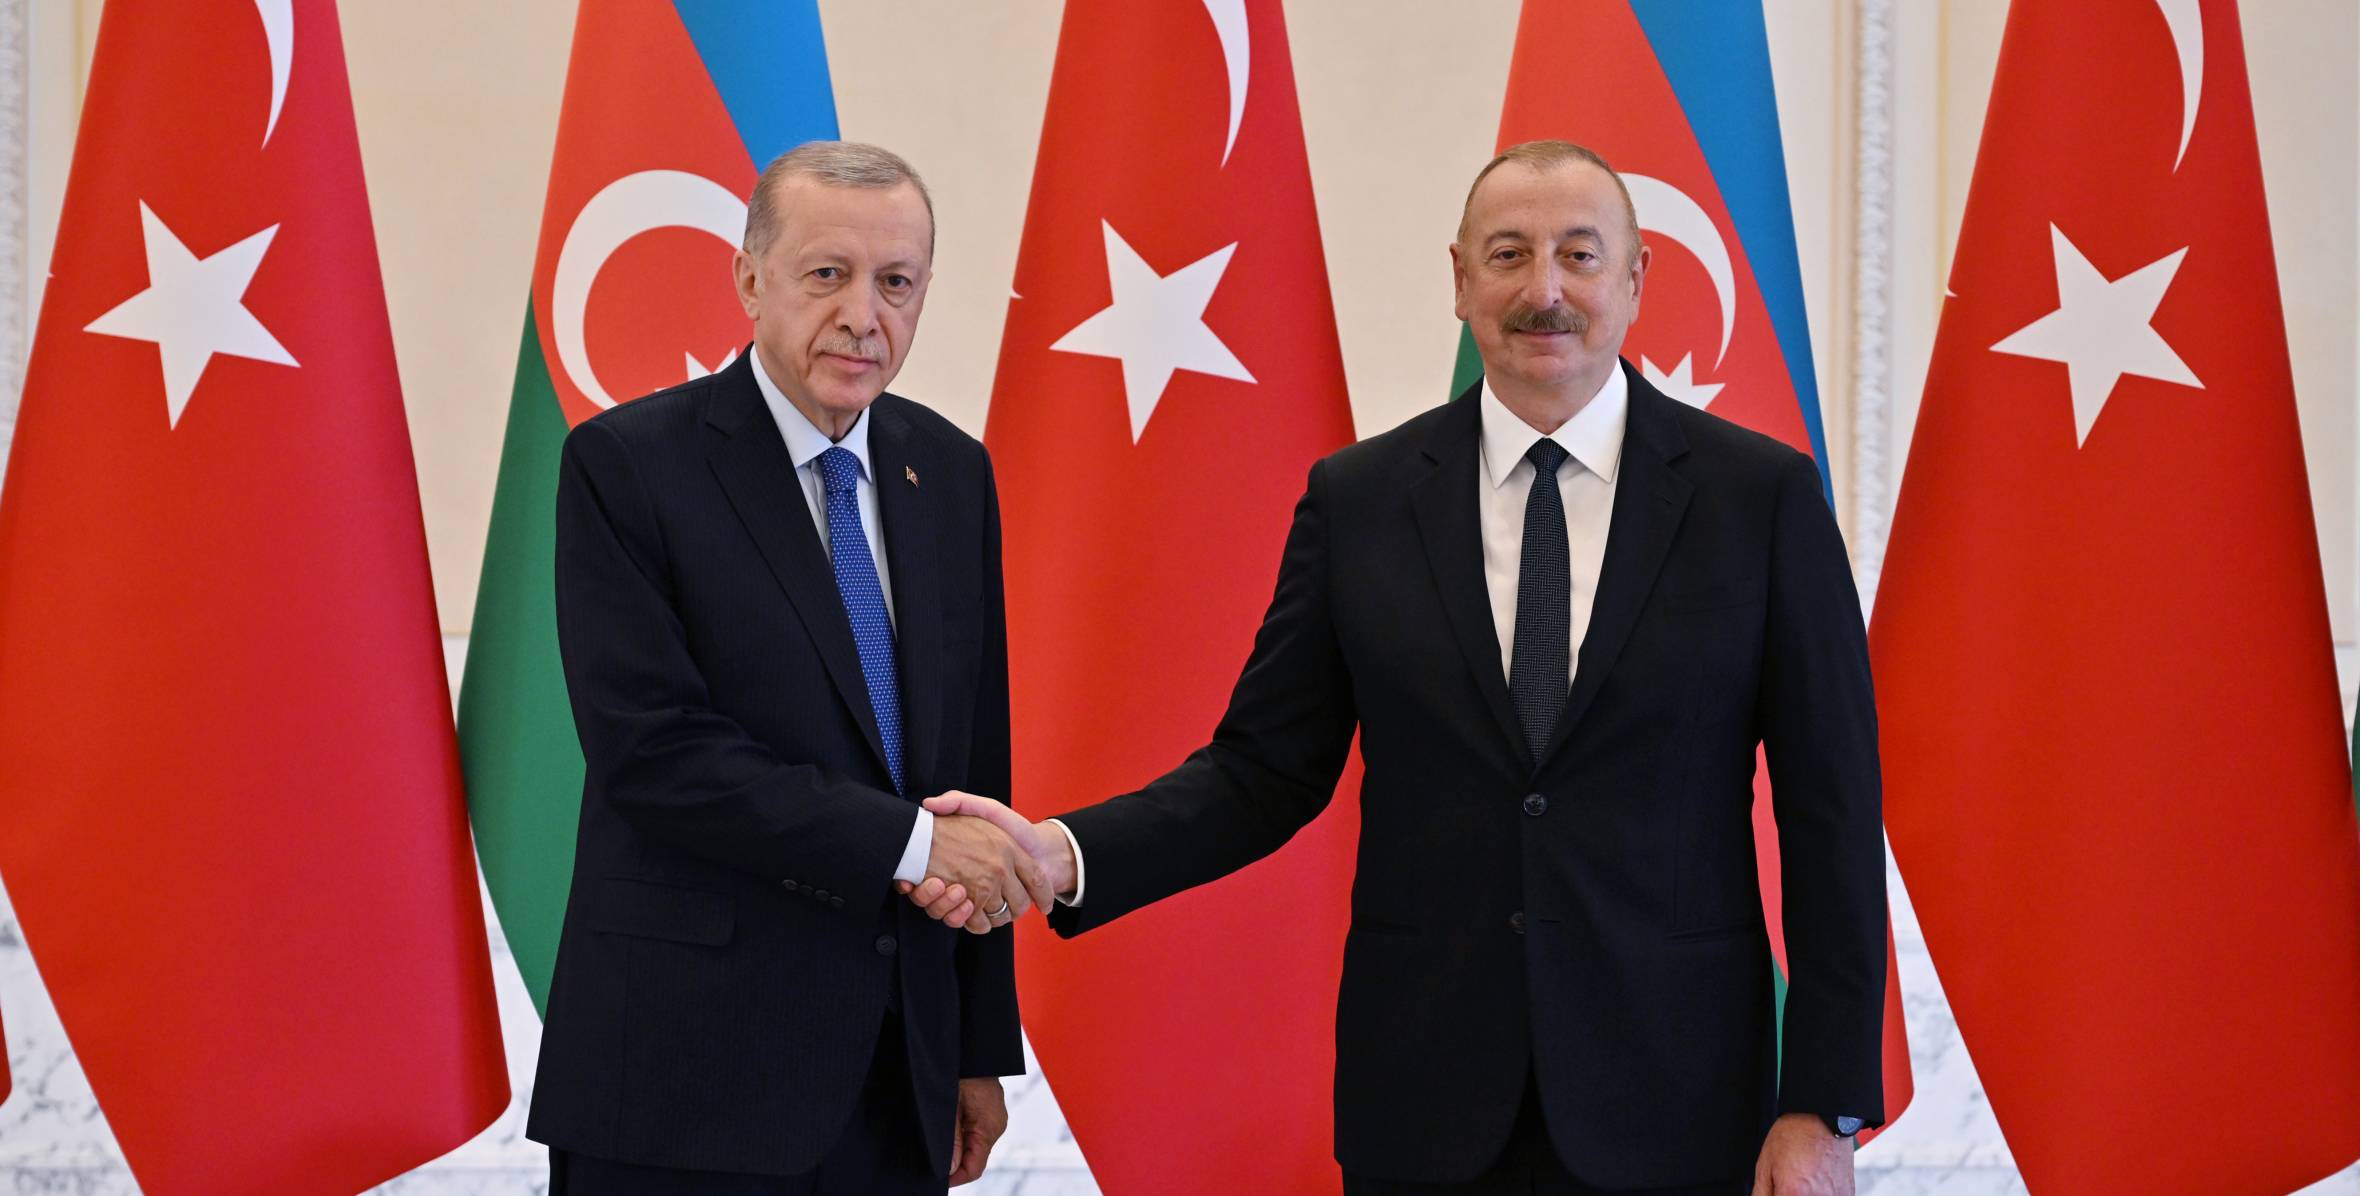 Состоялась встреча Президента Азербайджана Ильхама Алиева и Президента Турции Реджепа Тайипа Эрдогана один на один